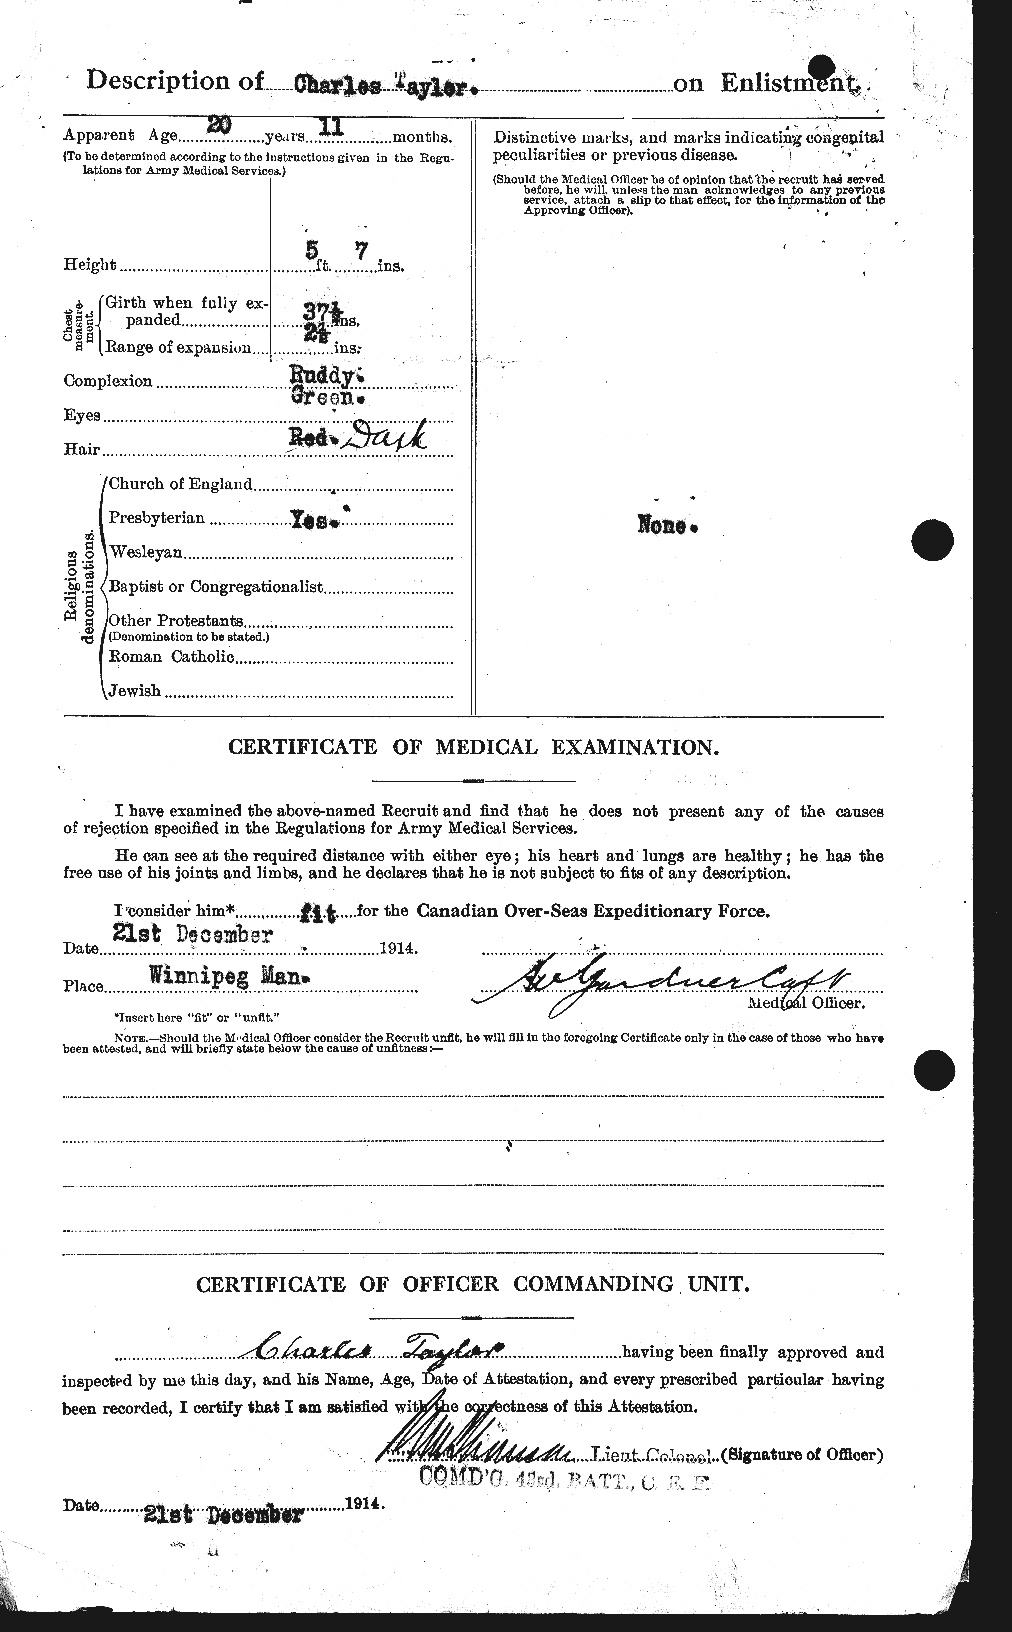 Dossiers du Personnel de la Première Guerre mondiale - CEC 626816b